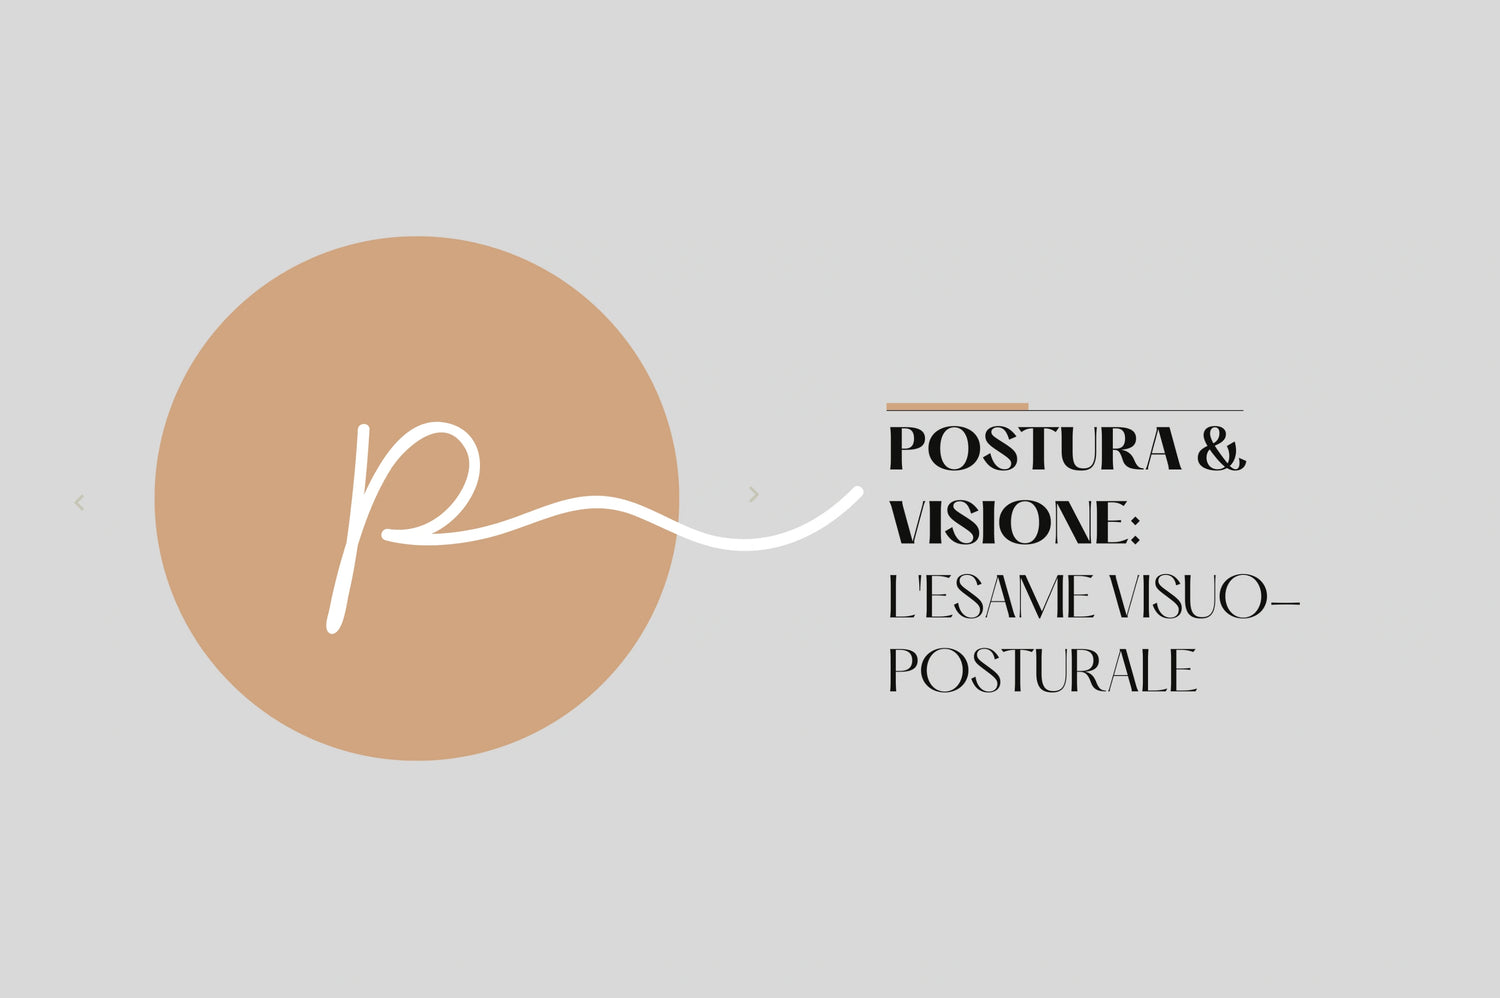 Postura e visione: l'esame visuo-posturale Ottica Paoletti a Pieve di Soligo